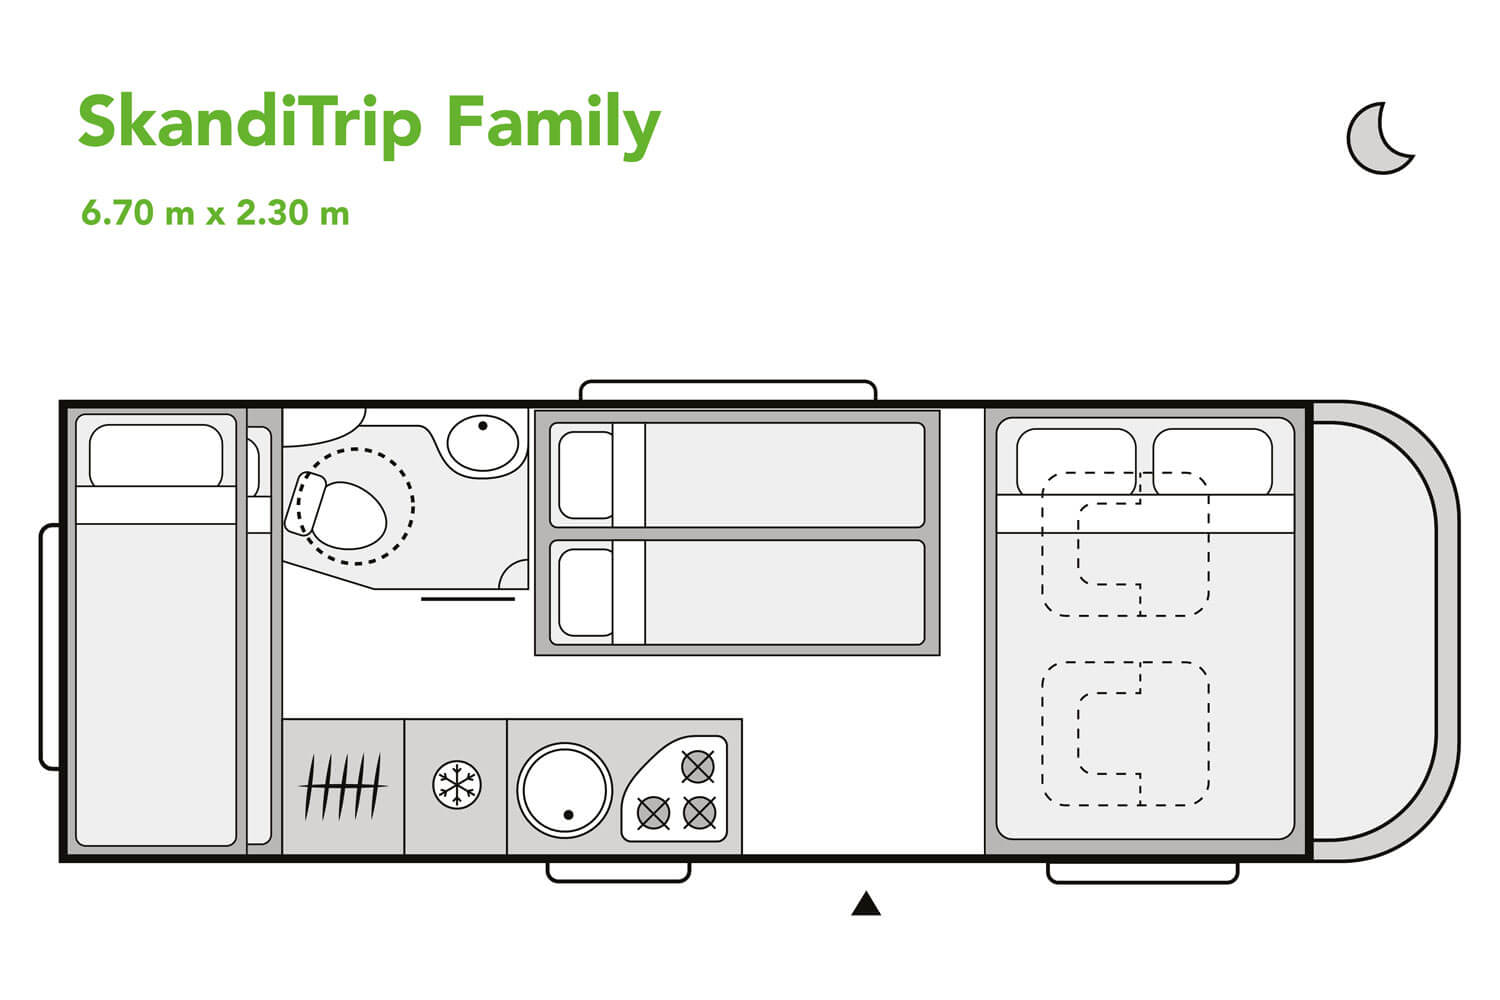 SkandiTrip family motorhome daytime blueprint